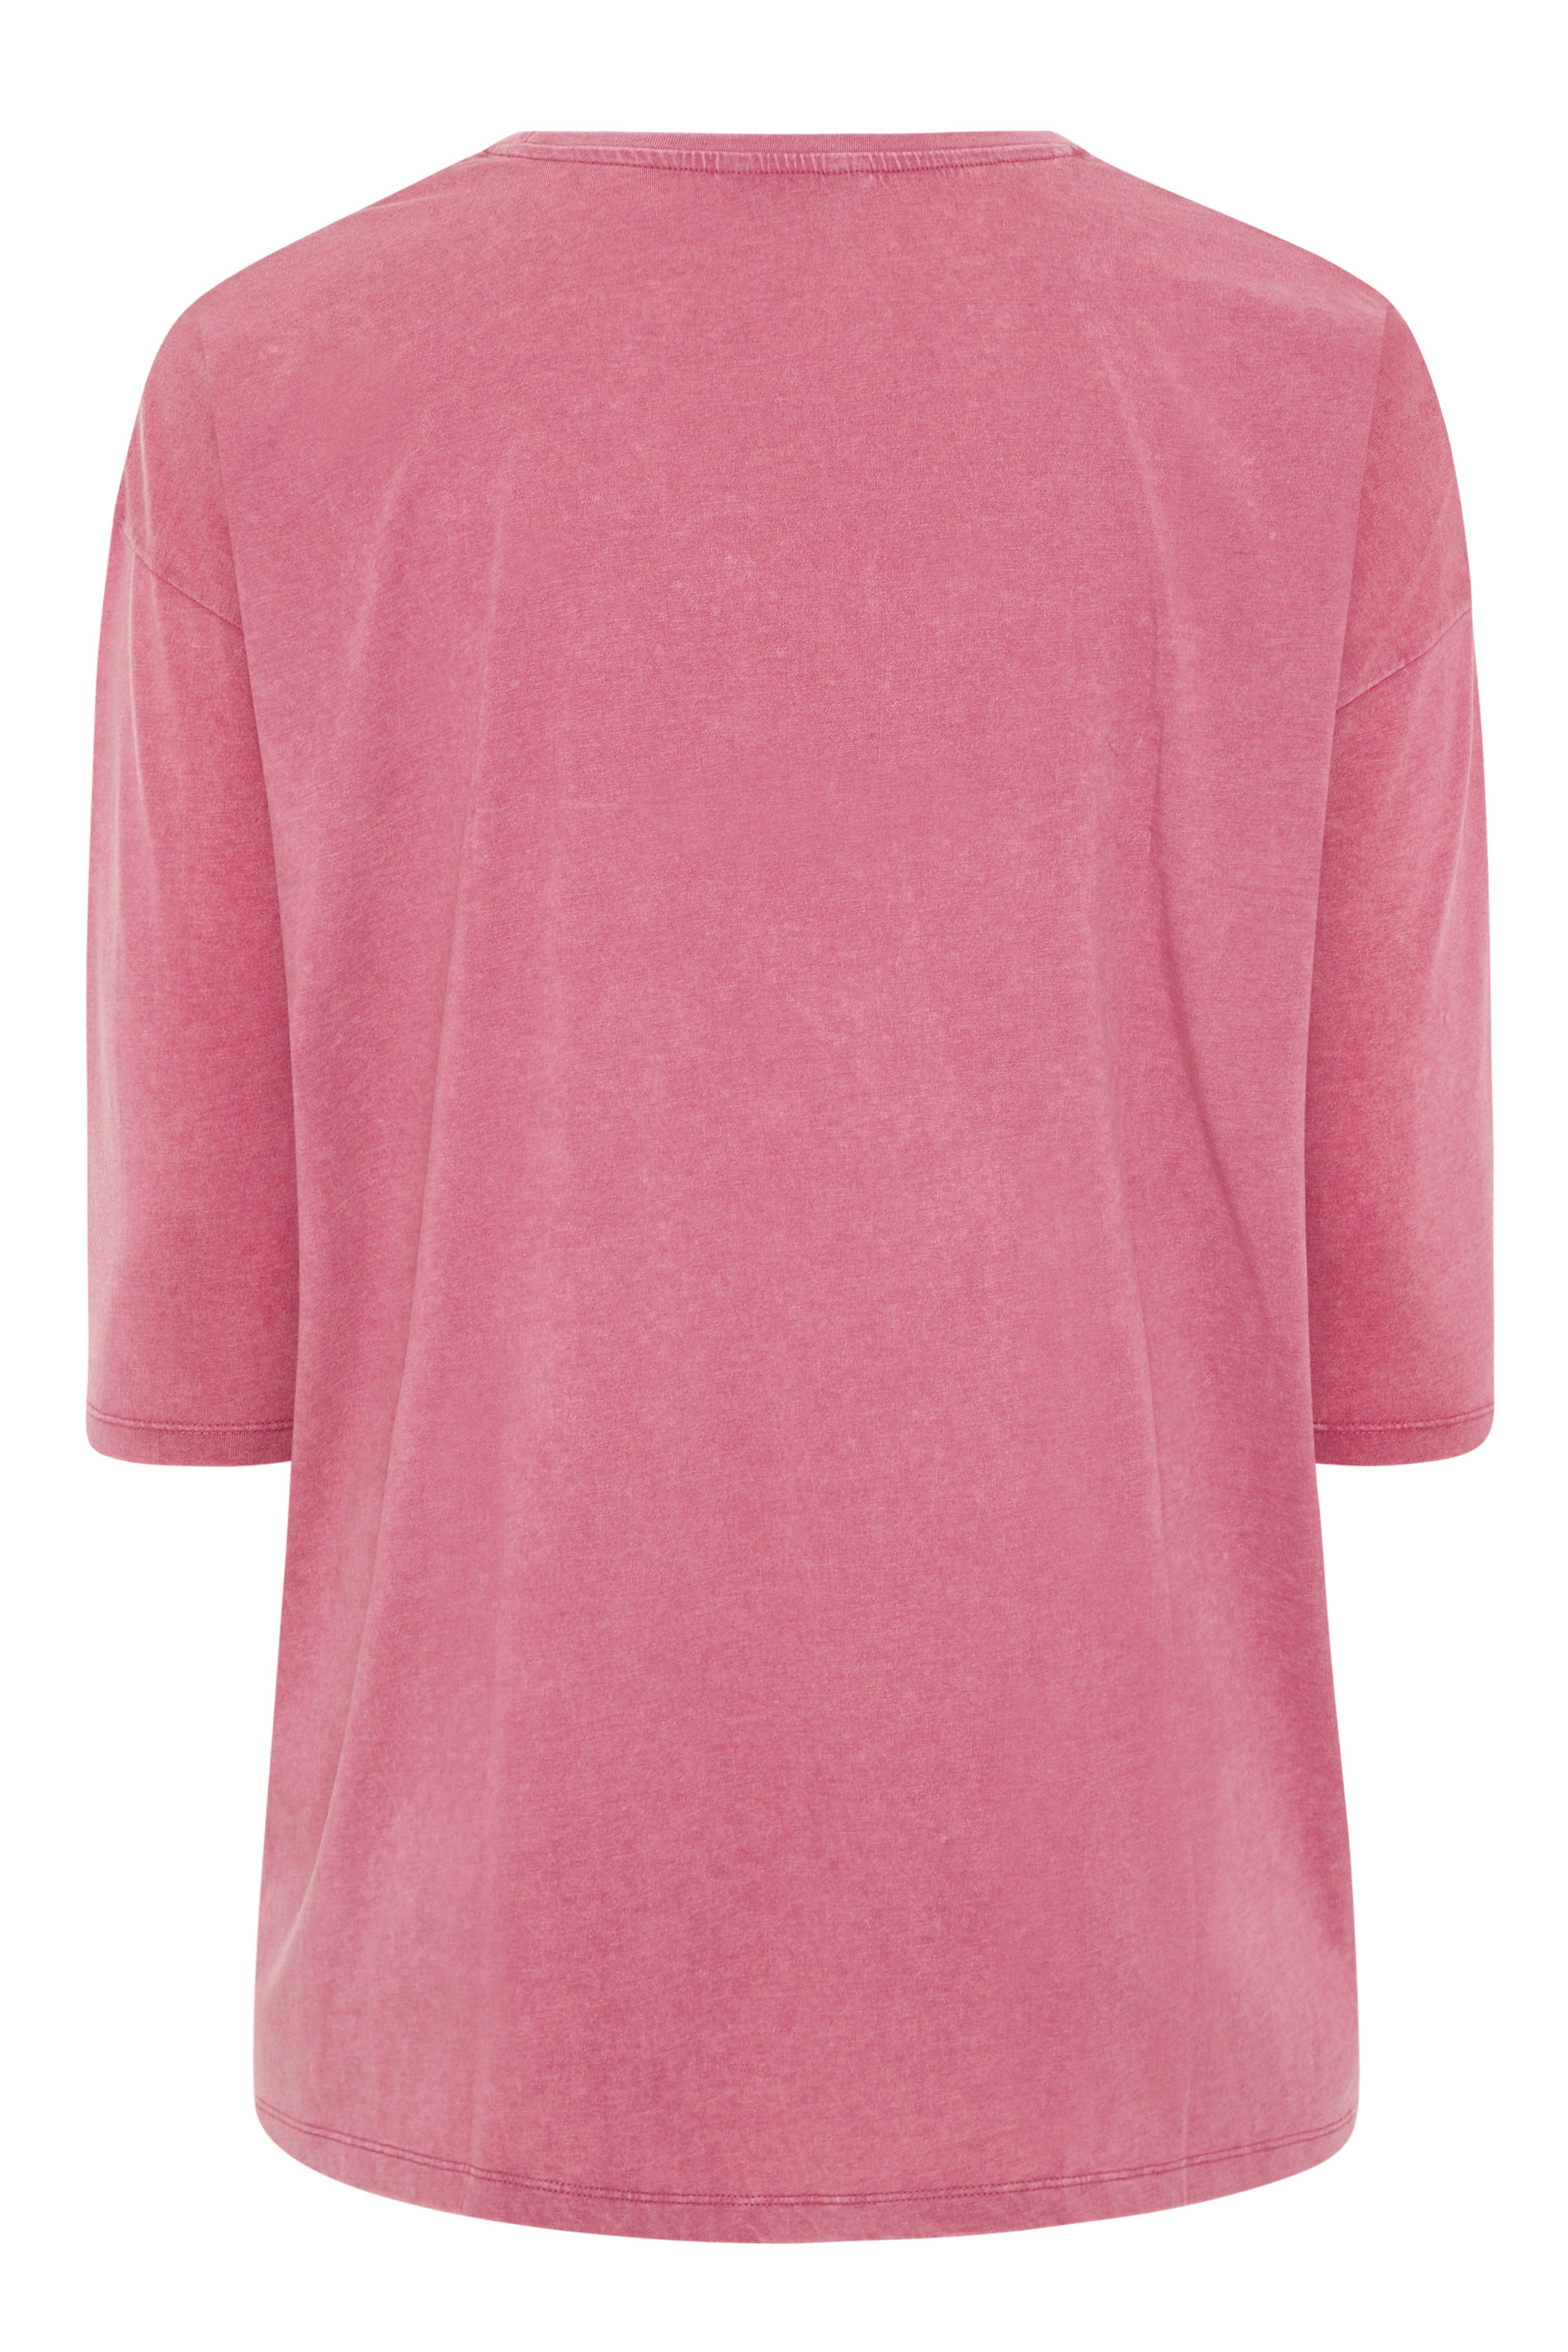 Pink Acid Wash Drop Shoulder Top | Yours Clothing